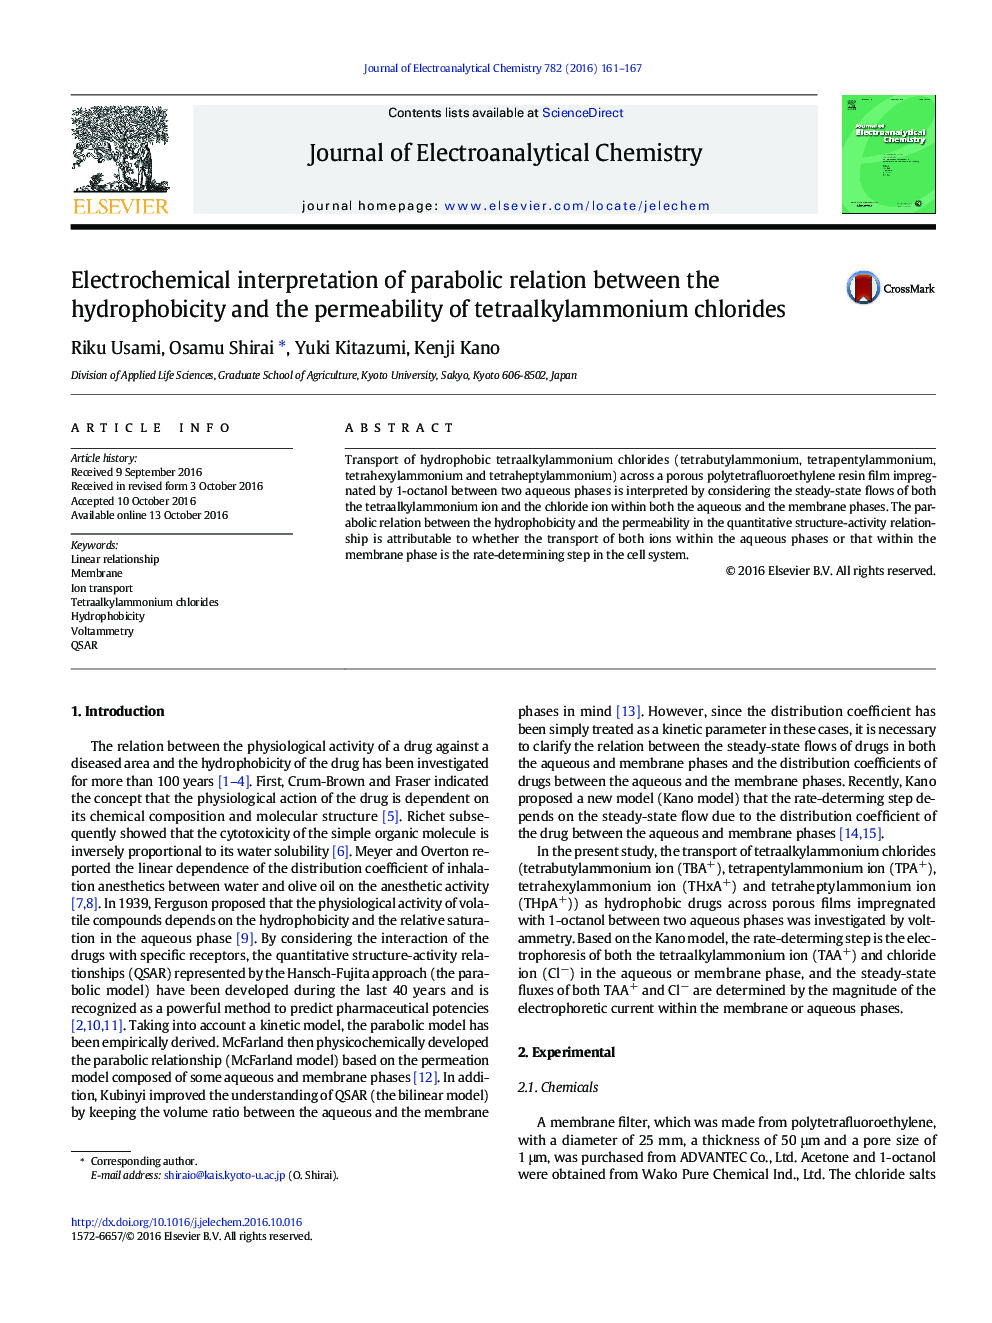 تفسیر الکتروشیمیایی از رابطه پارابولیکی بین هیدروفوبیت و نفوذپذیری تتراکلی آمونیوم کلرید 